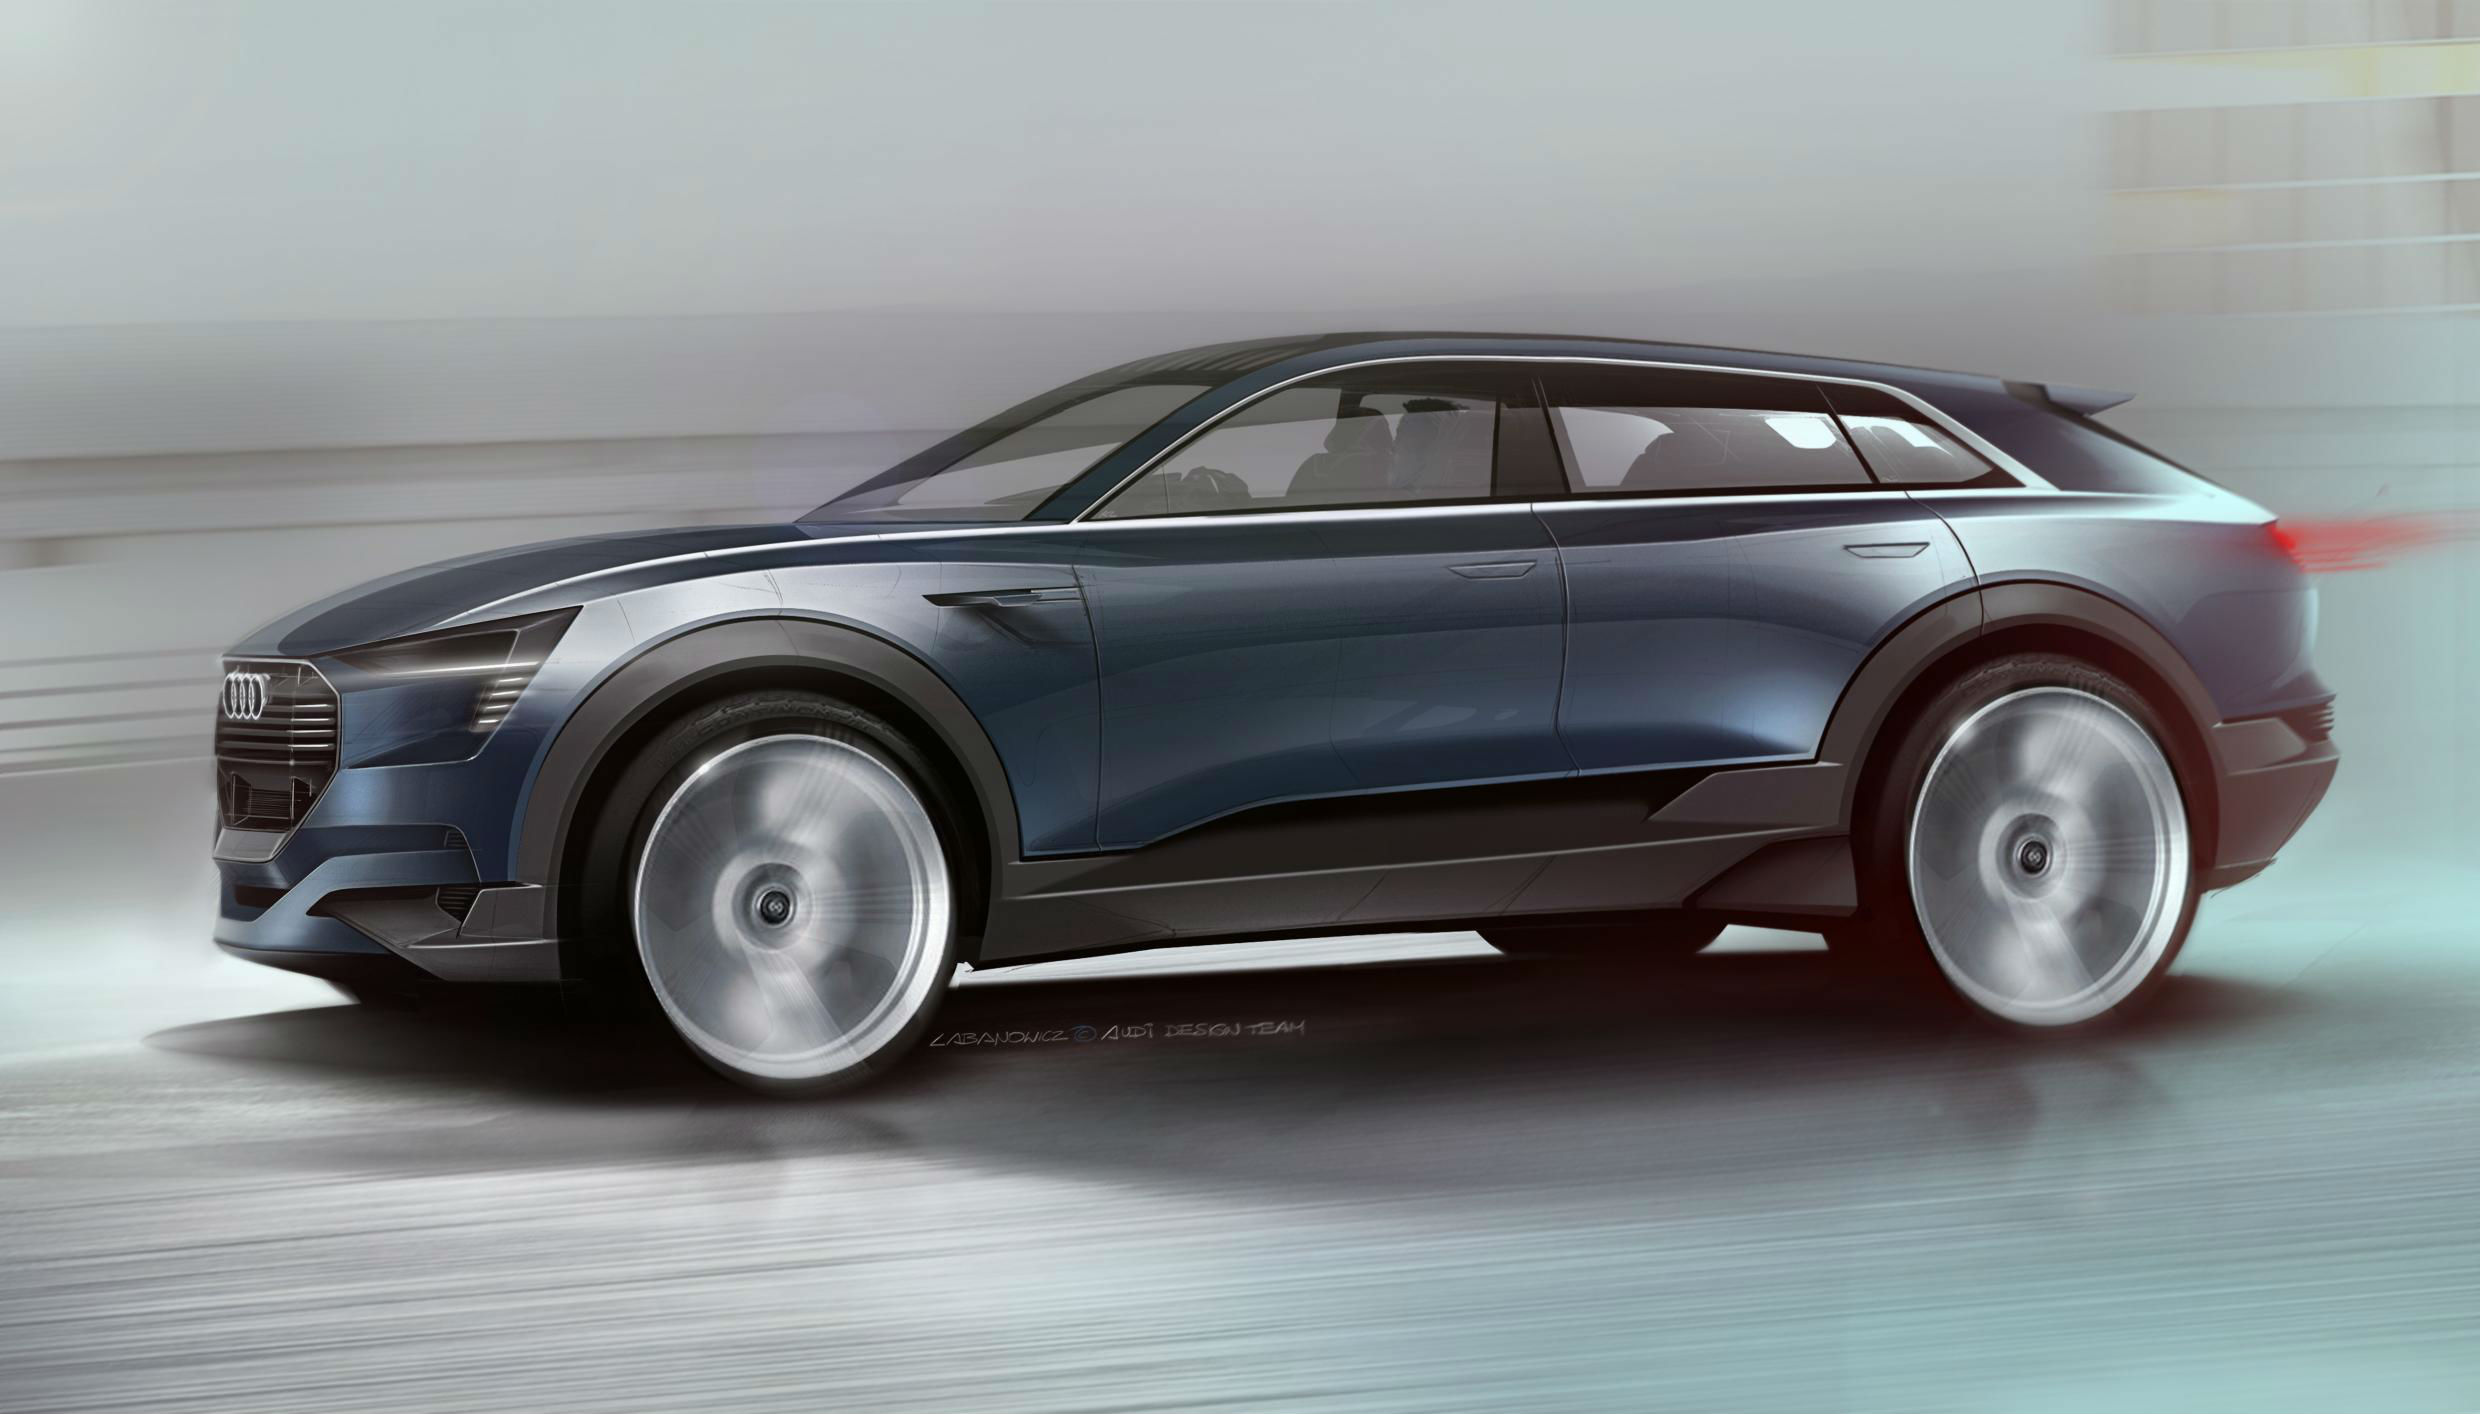 Audi-Quattro-e-tron-Concept